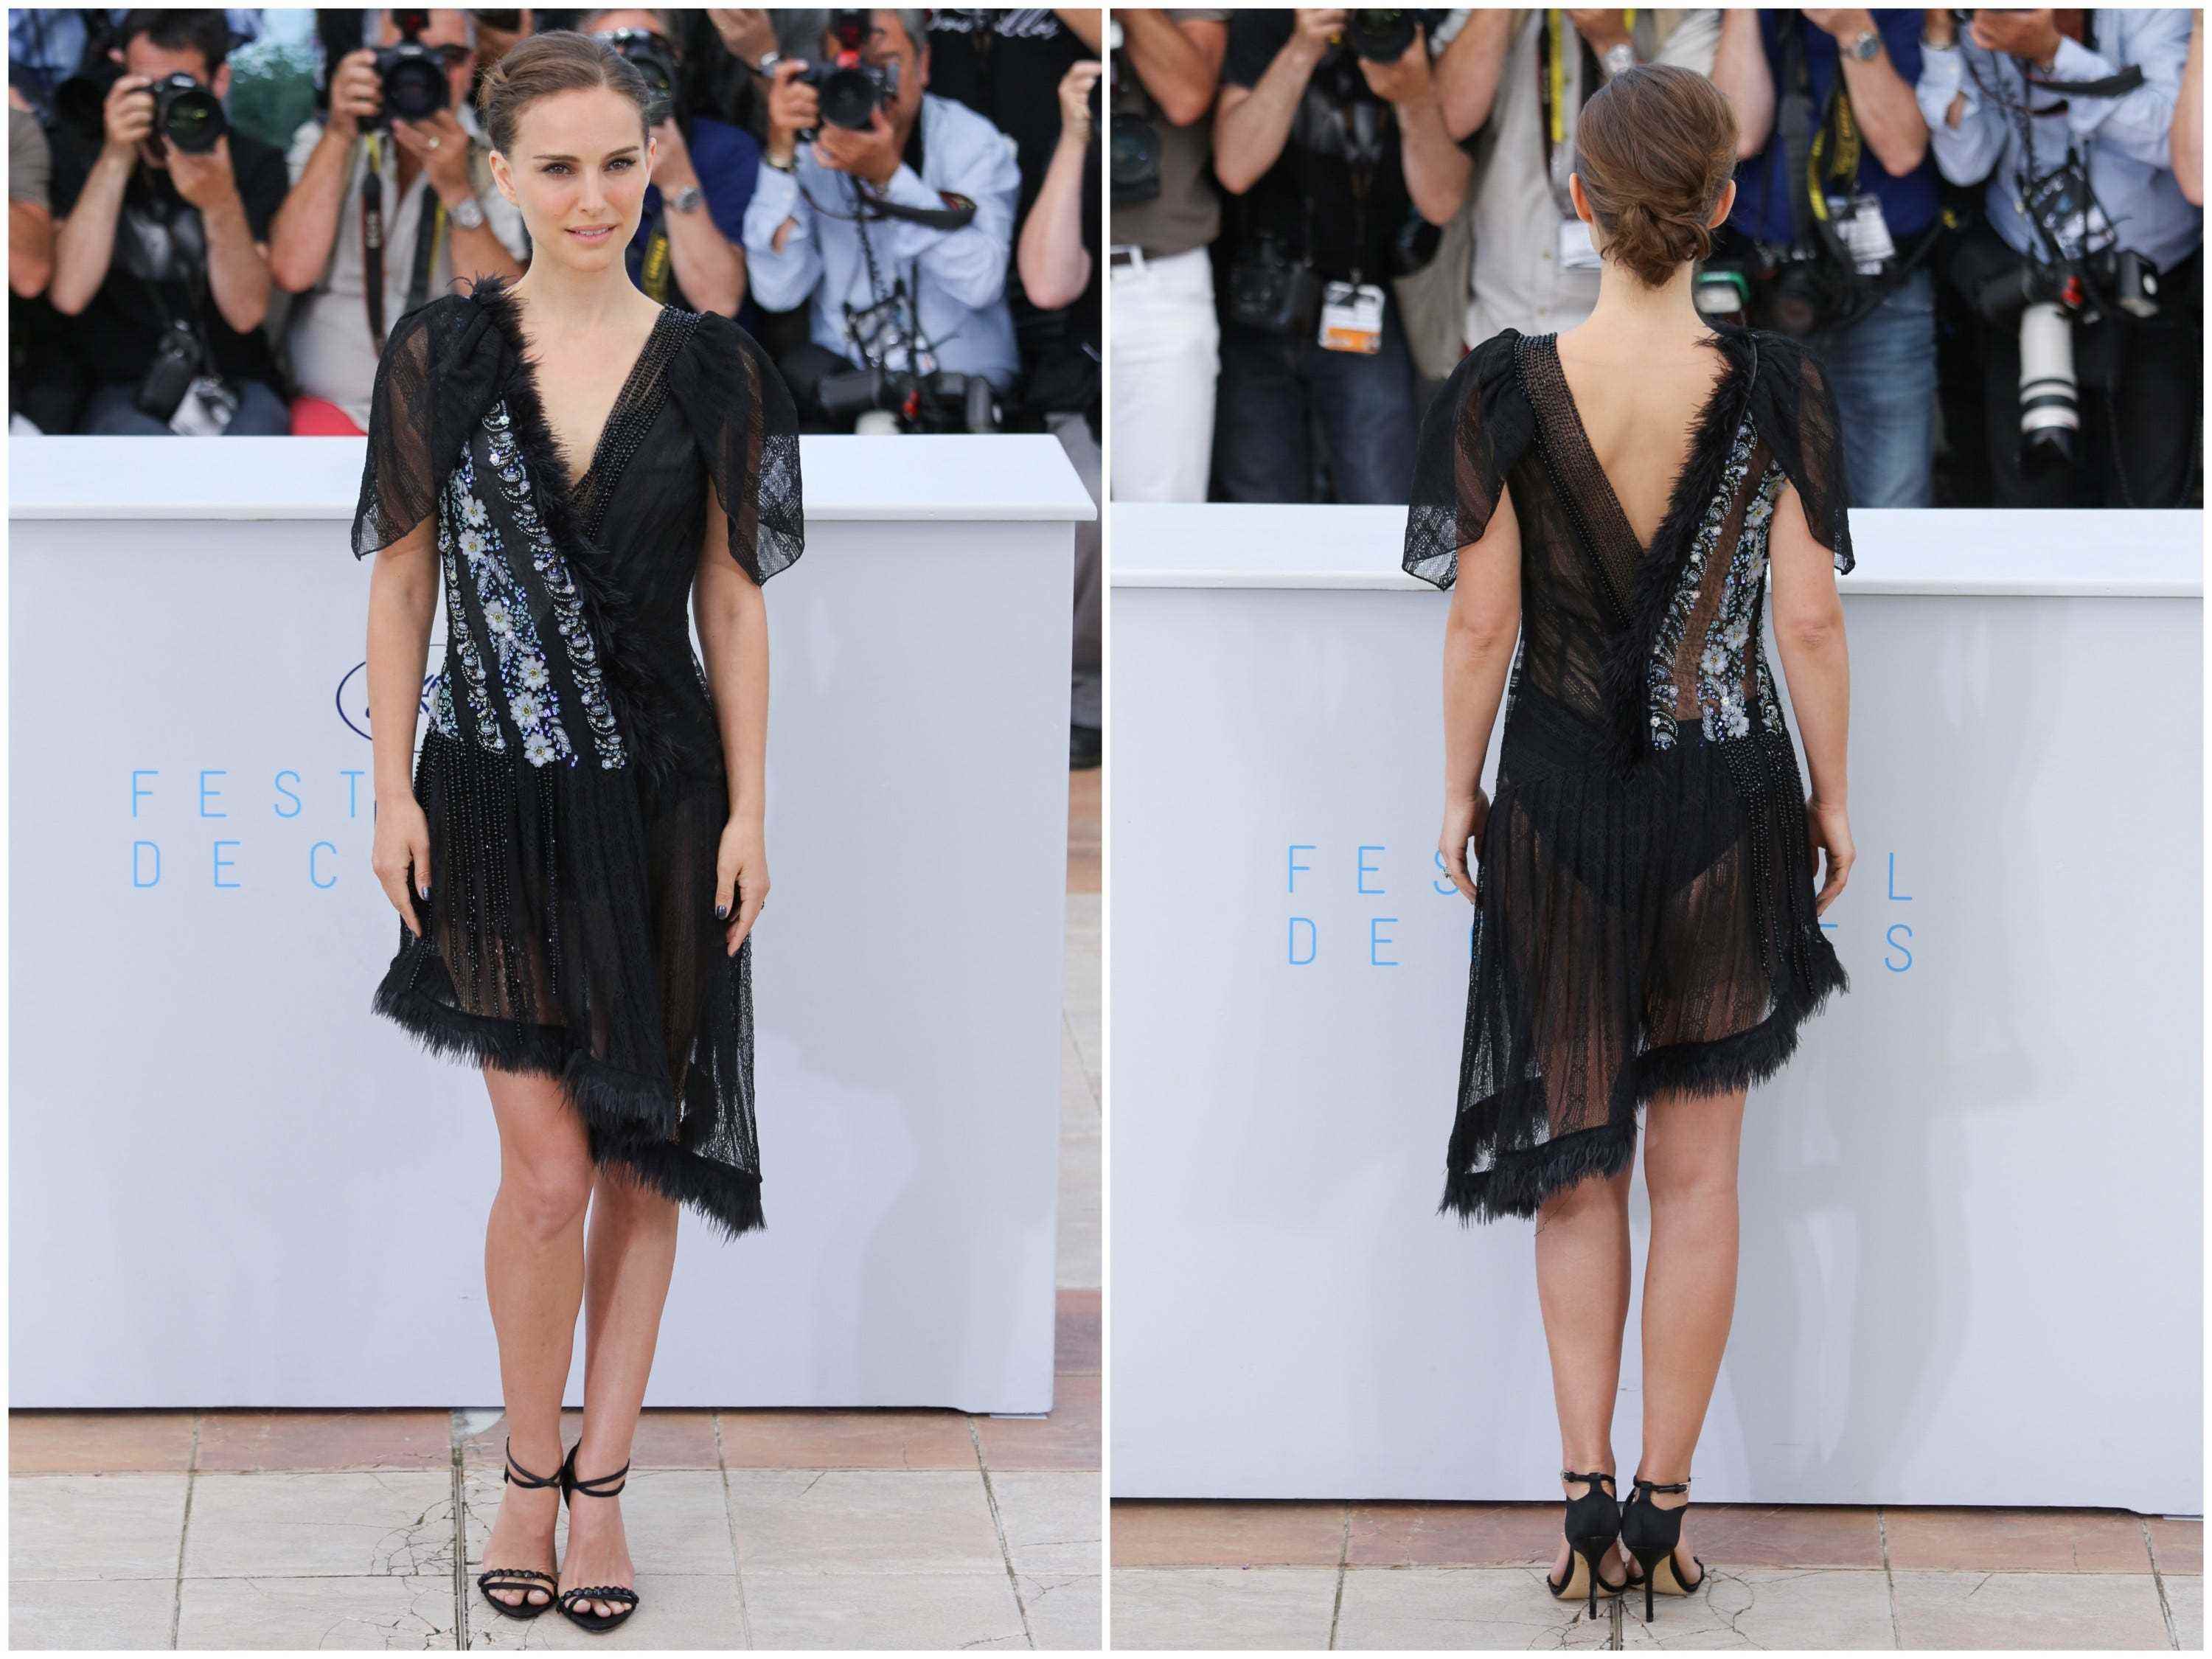 Natalie Portman Seite an Seite in einem transparenten Kleid